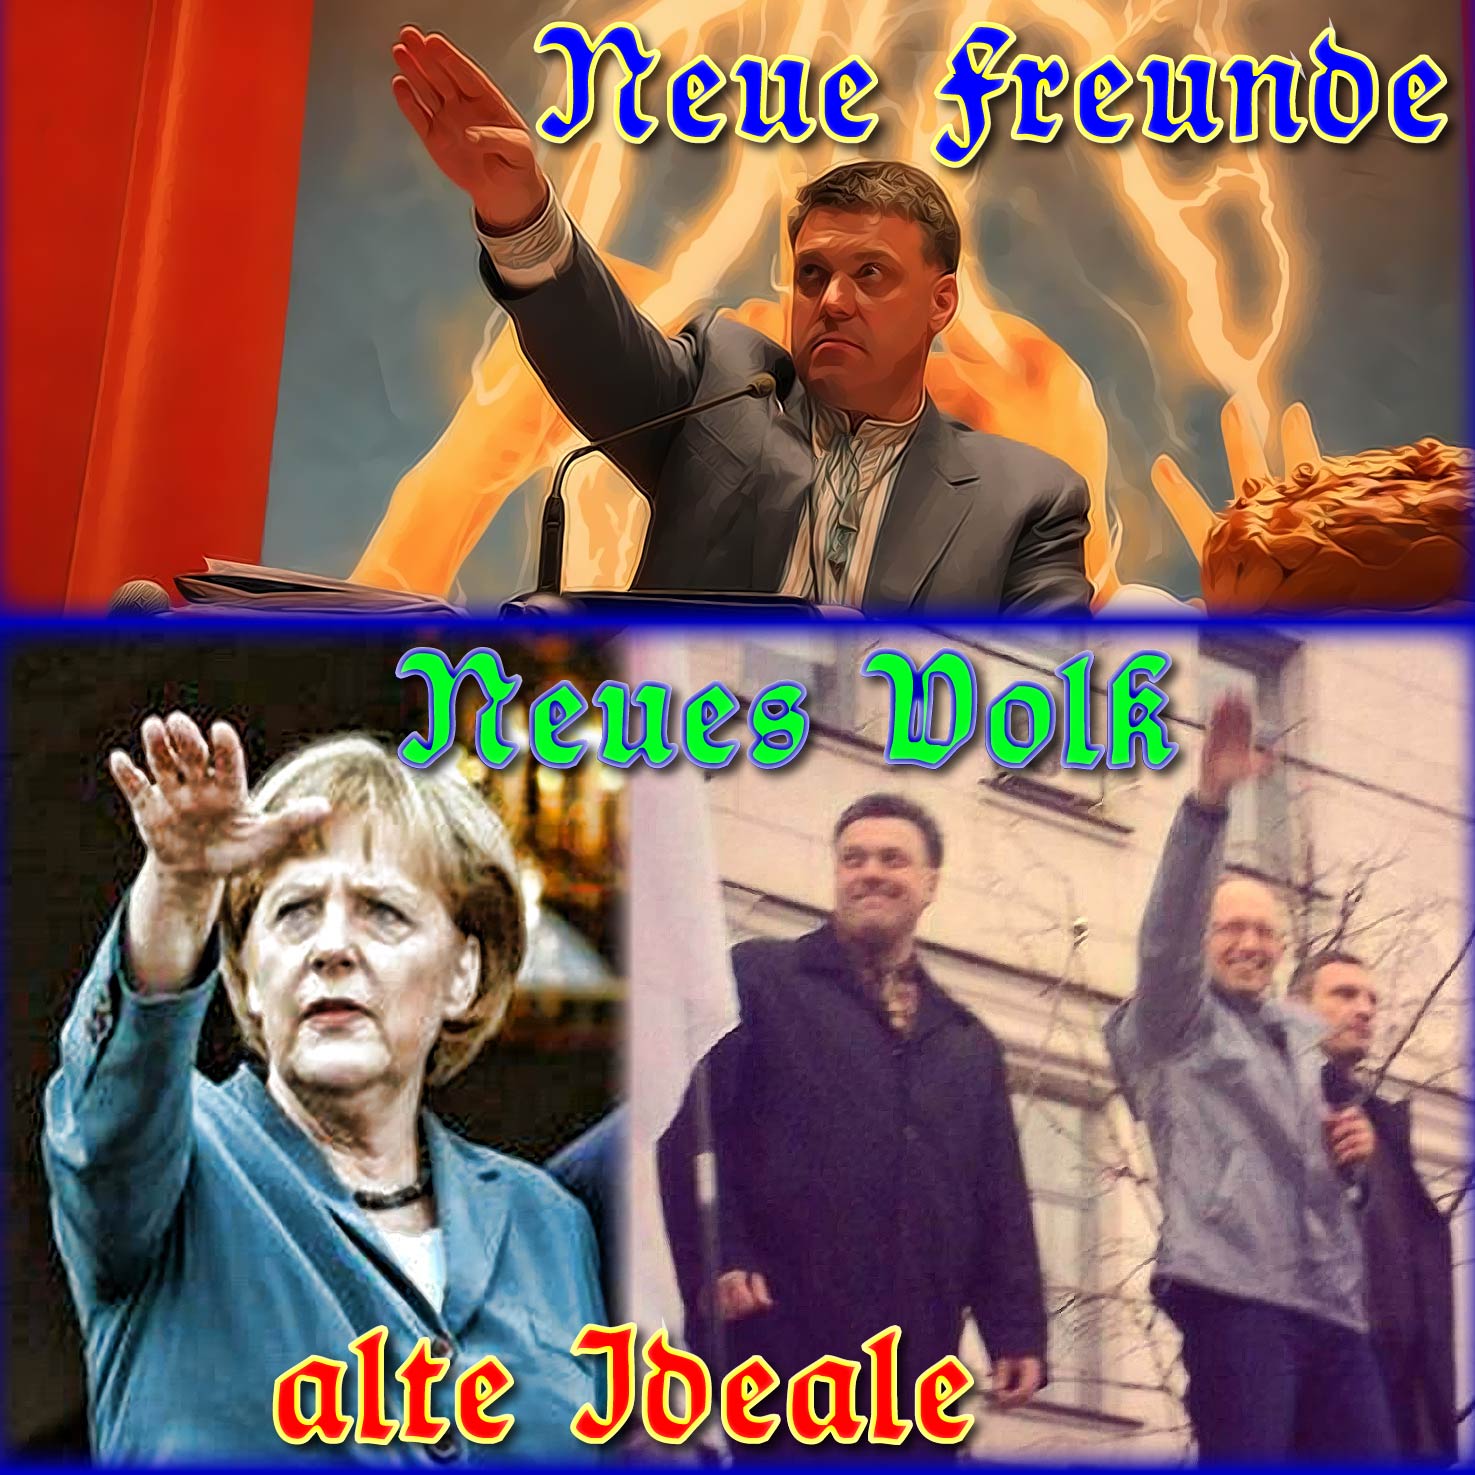 Krisensitzung Merkel-Junta verliert endgültig das Vertrauen ins Volk Neue Freunde neues Volk alte Ideale as neue Volk lauert in der Ukraine Merkel qpress Klitschko Umsturz